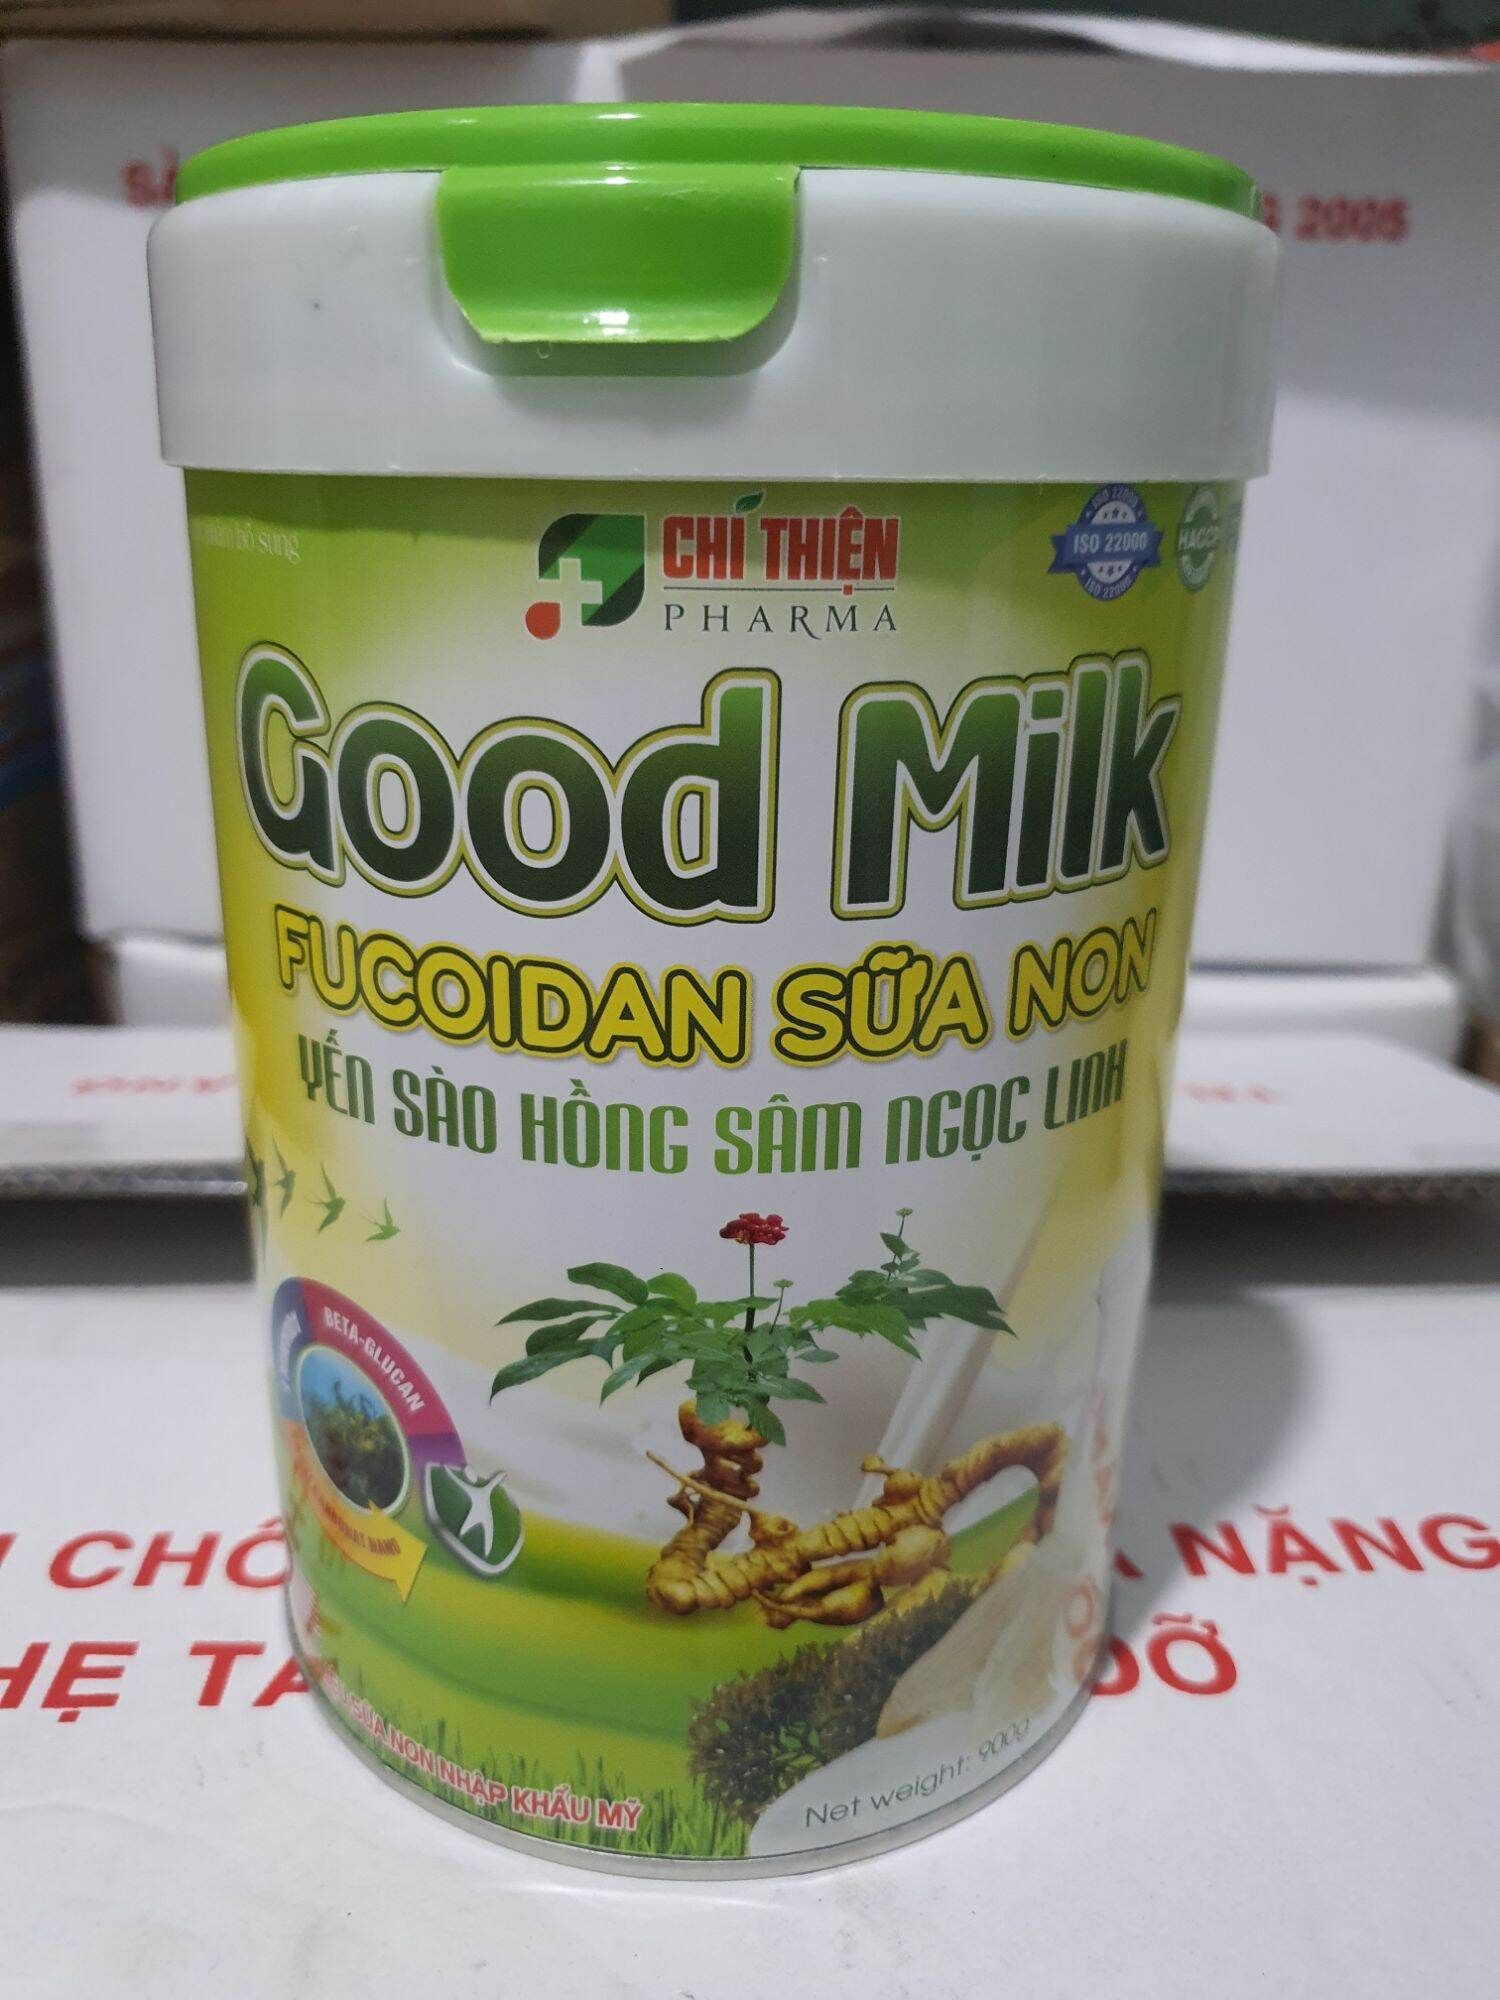 Sữa bột Good Milk Fucoidan sữa non giúp ăn ngủ ngon, tăng sức khoẻ hộp 900g